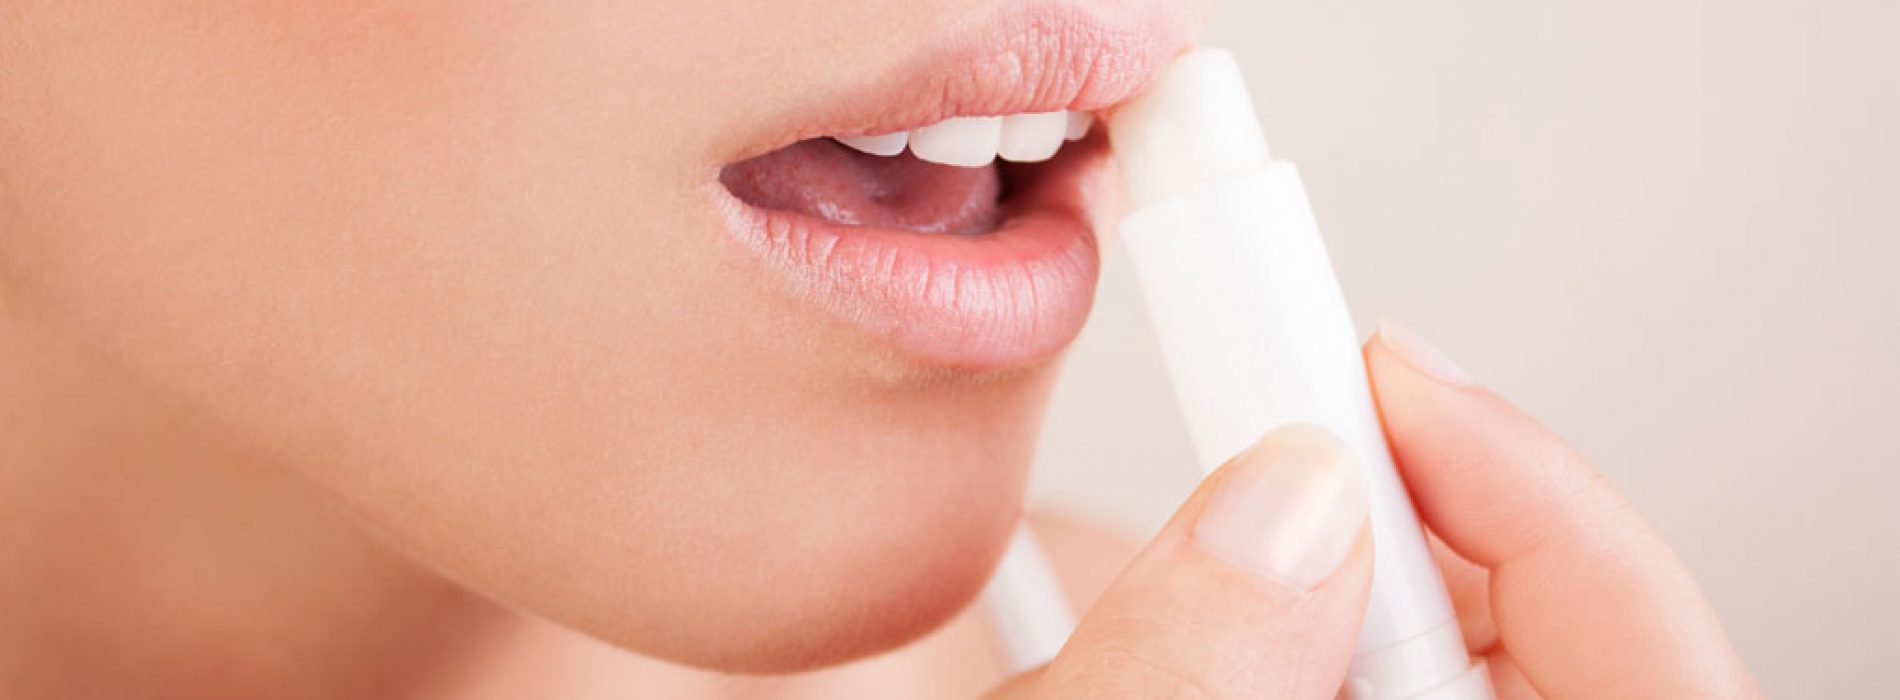 Lippenbalsems kunnen schadelijk voor je zijn volgens de Belgische consumentenbond!